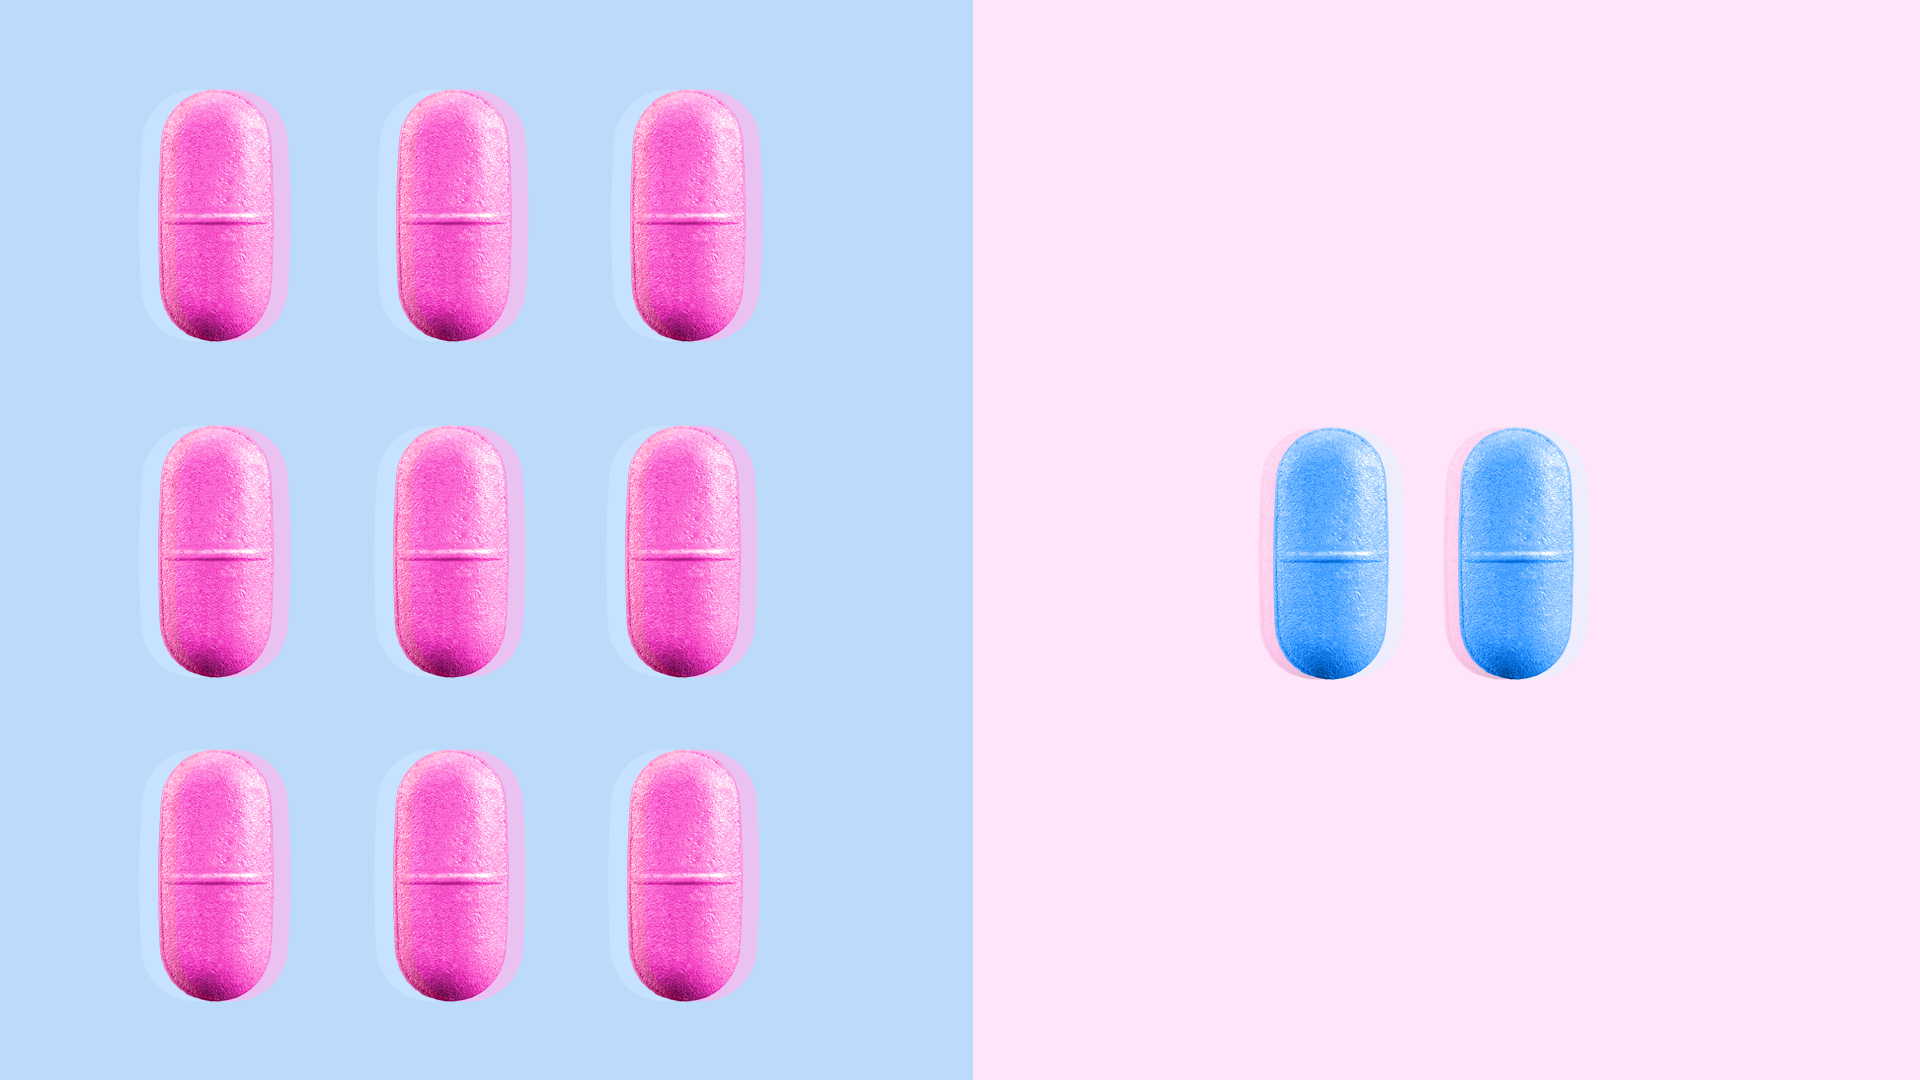 An illustration of prescription pills.